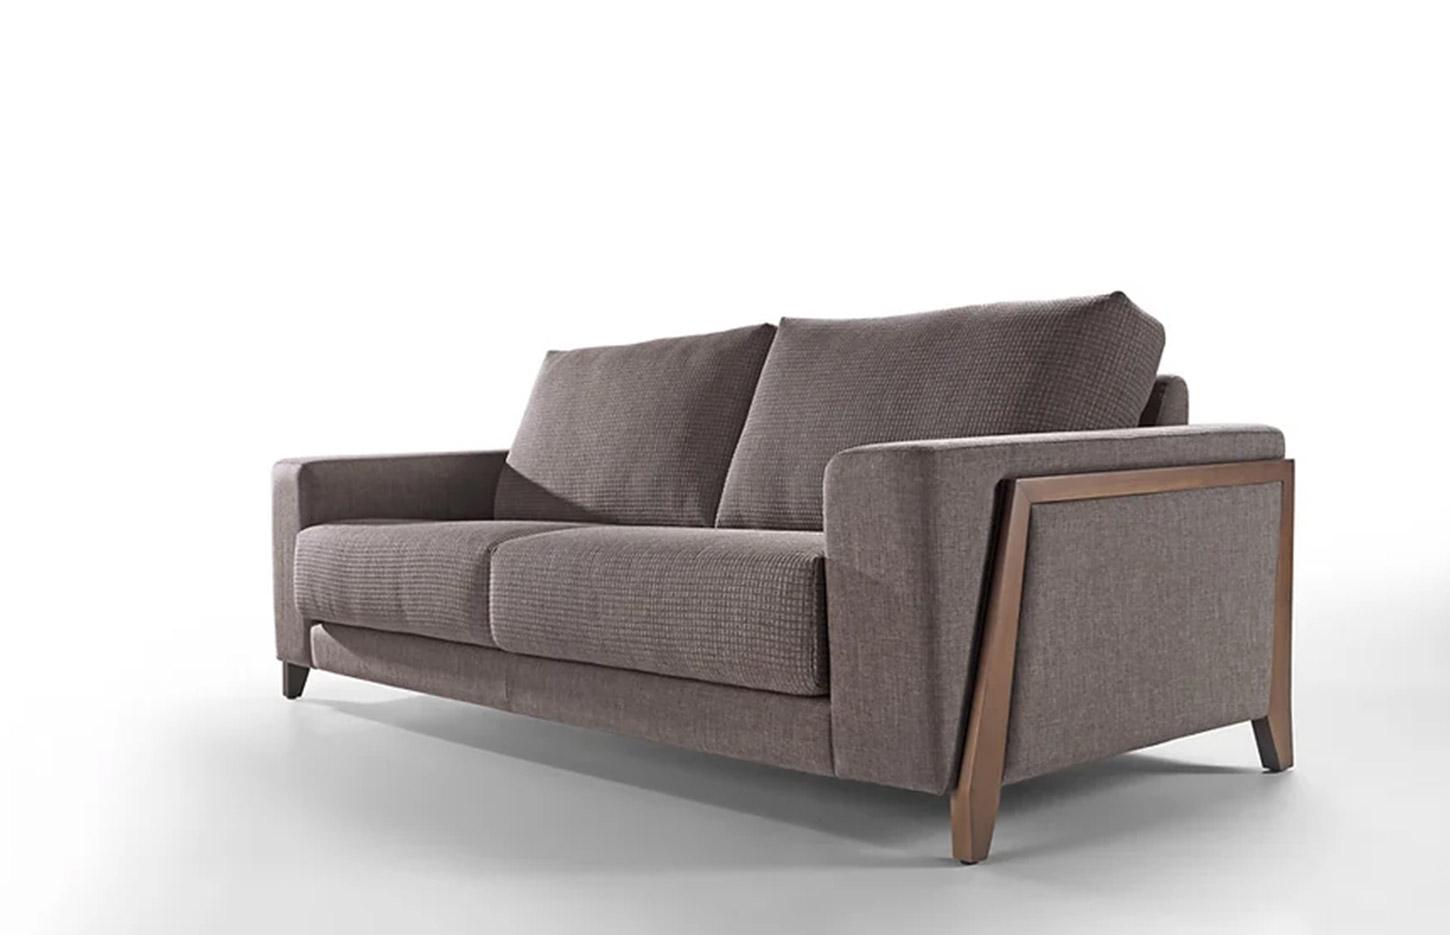 Canapé confortable en tissu avec pieds et structure en bois, gamme Balaton - France Bureau